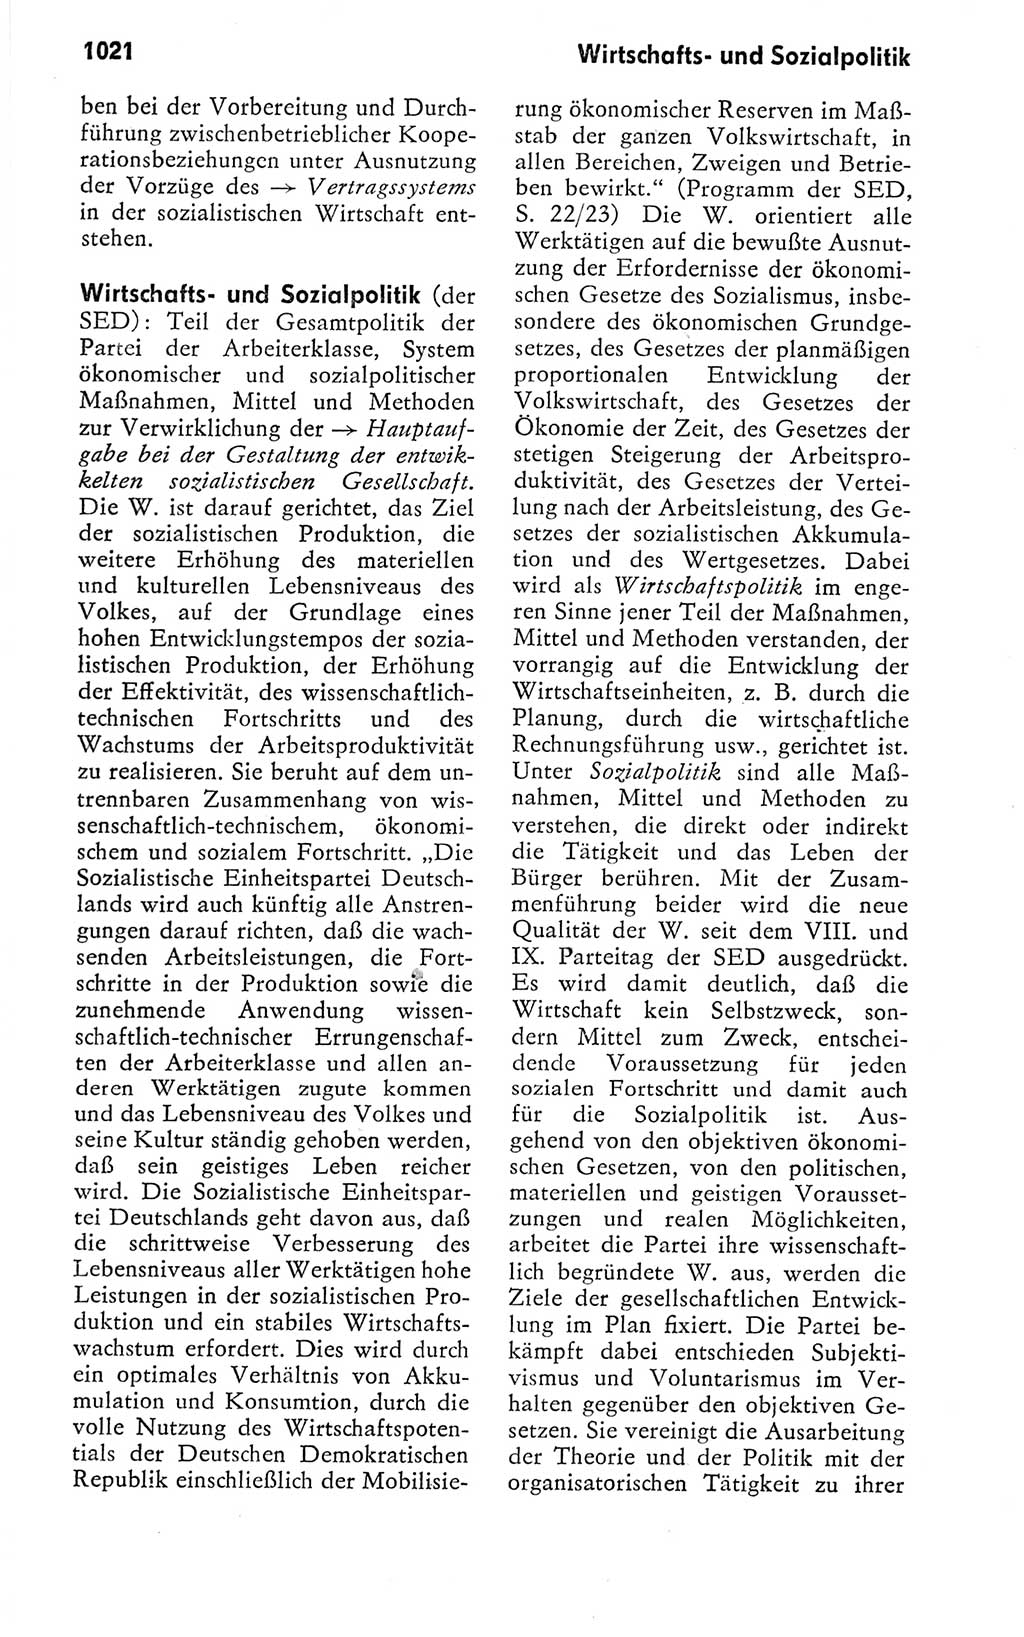 Kleines politisches Wörterbuch [Deutsche Demokratische Republik (DDR)] 1978, Seite 1021 (Kl. pol. Wb. DDR 1978, S. 1021)